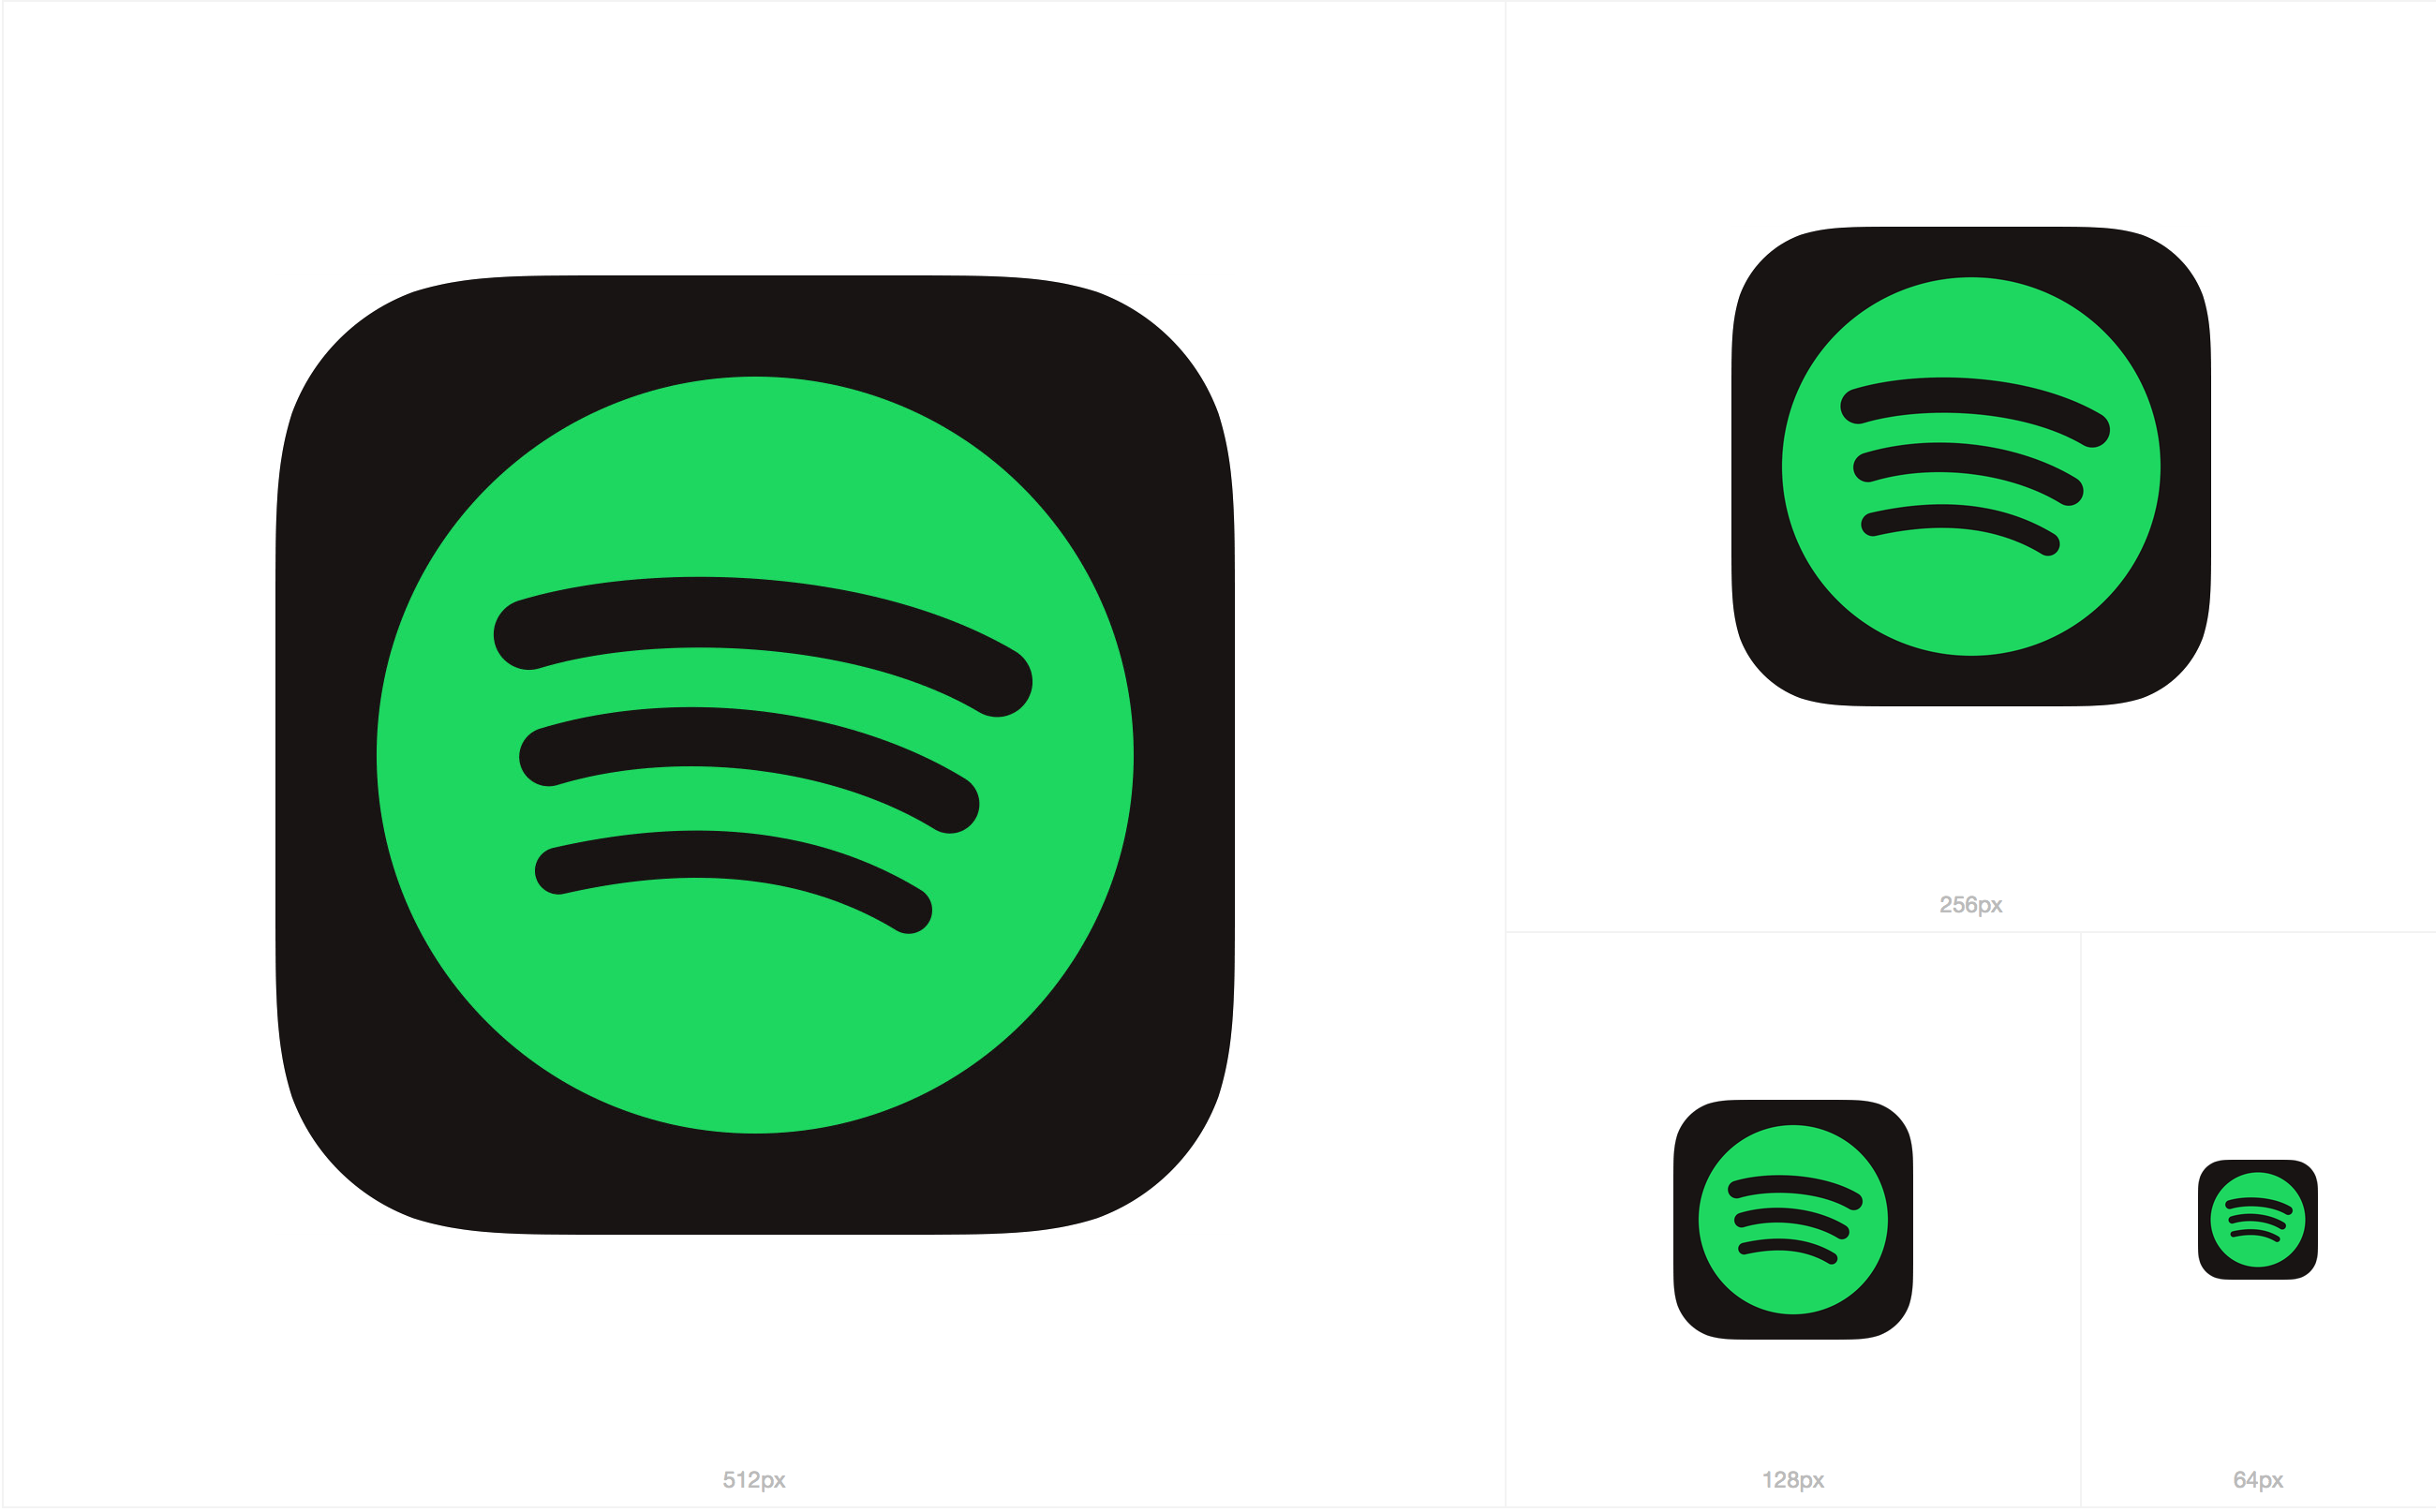 Spotify New Logo - Free Custom Spotify Icon 74841 | Download Custom Spotify Icon - 74841